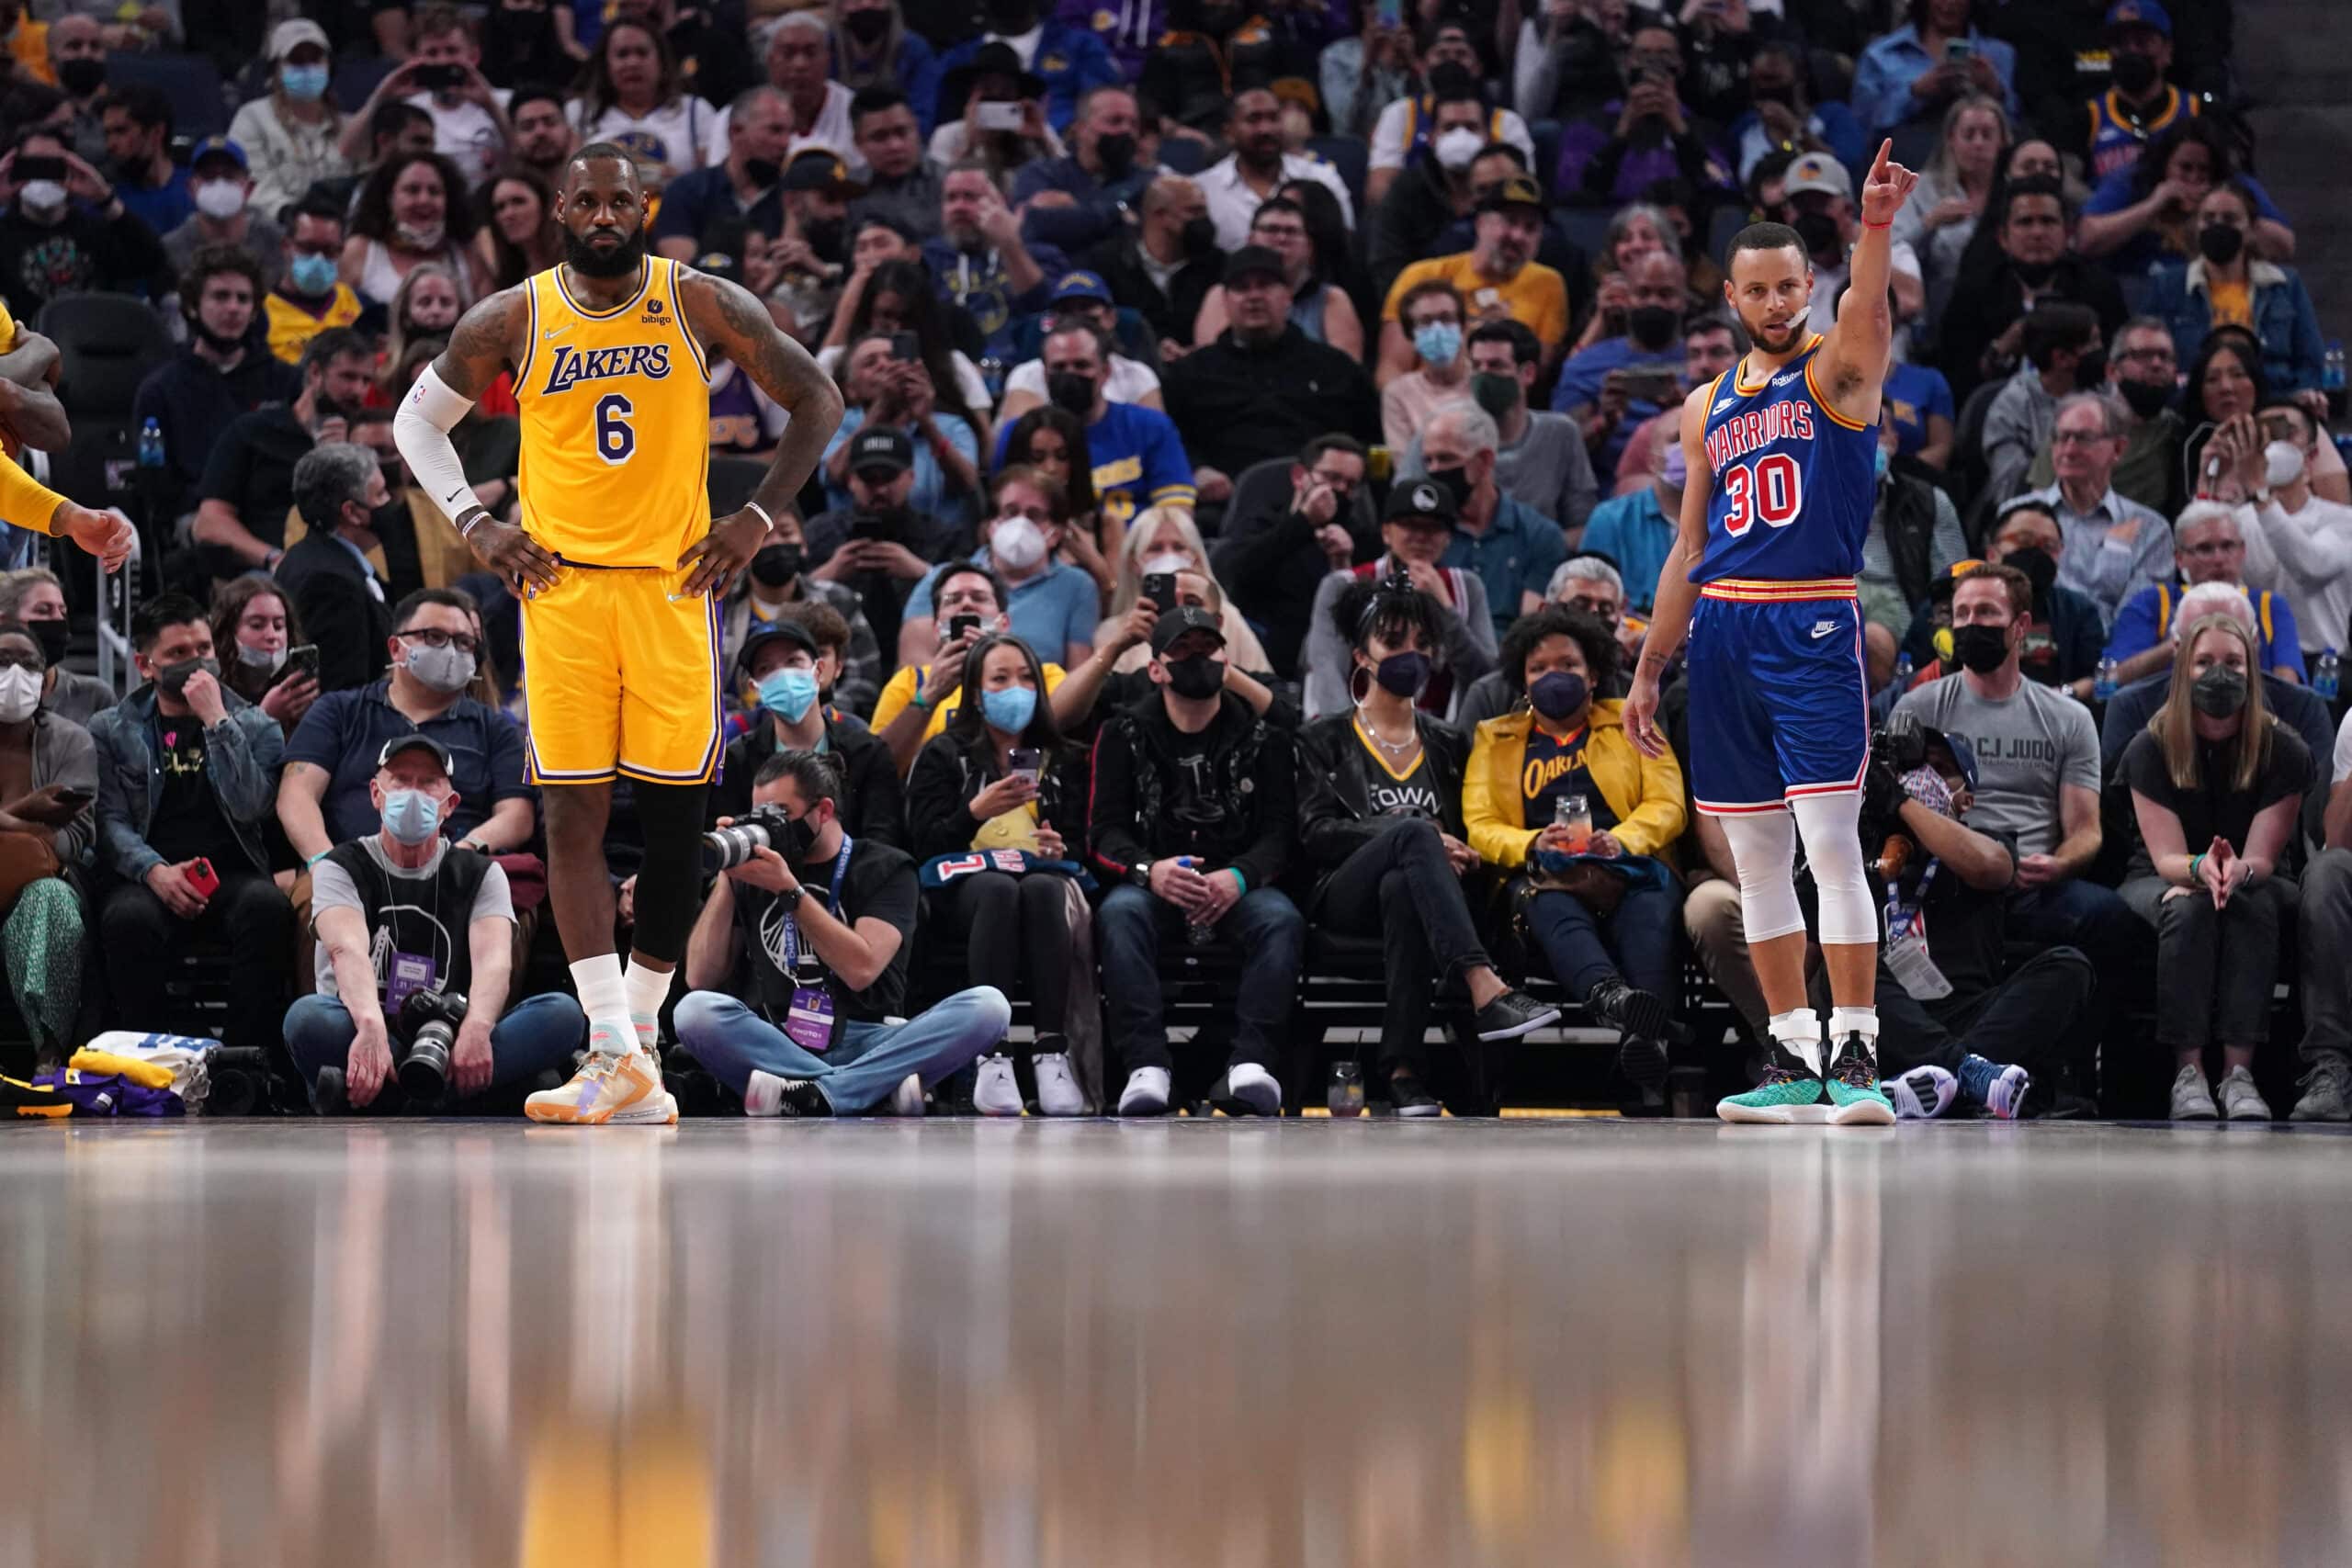 Lakers Warriors semifinals.